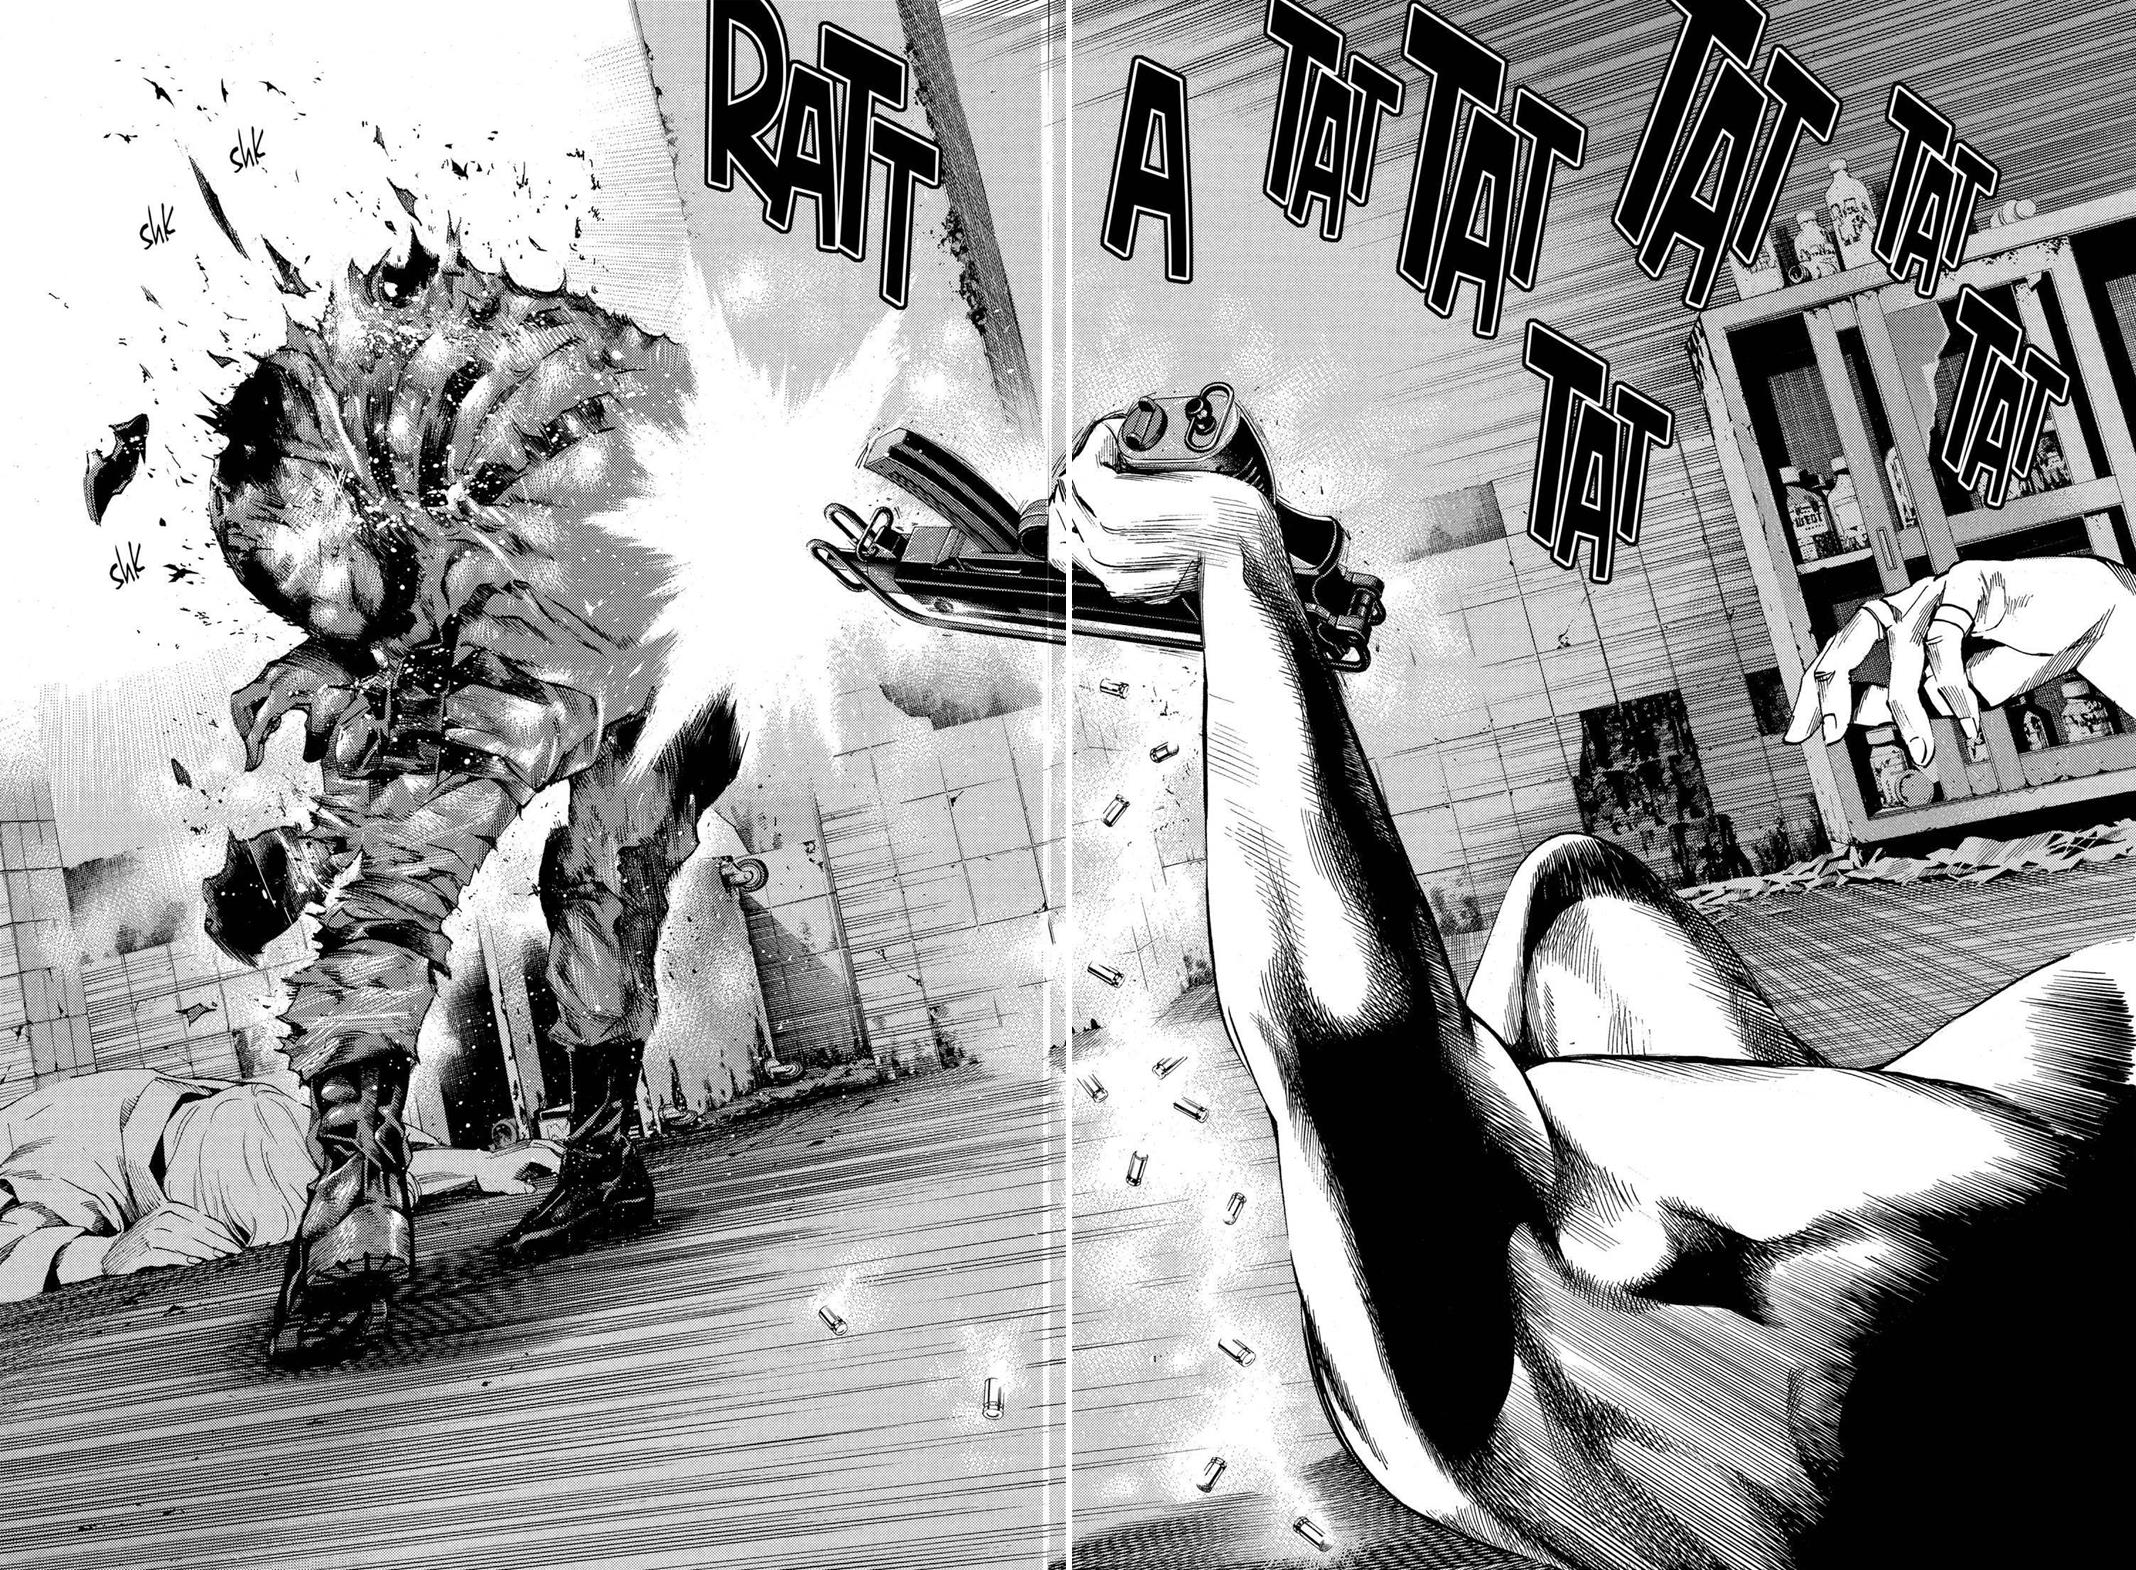 Death Note: Diretor promete violência e nudez na adaptação